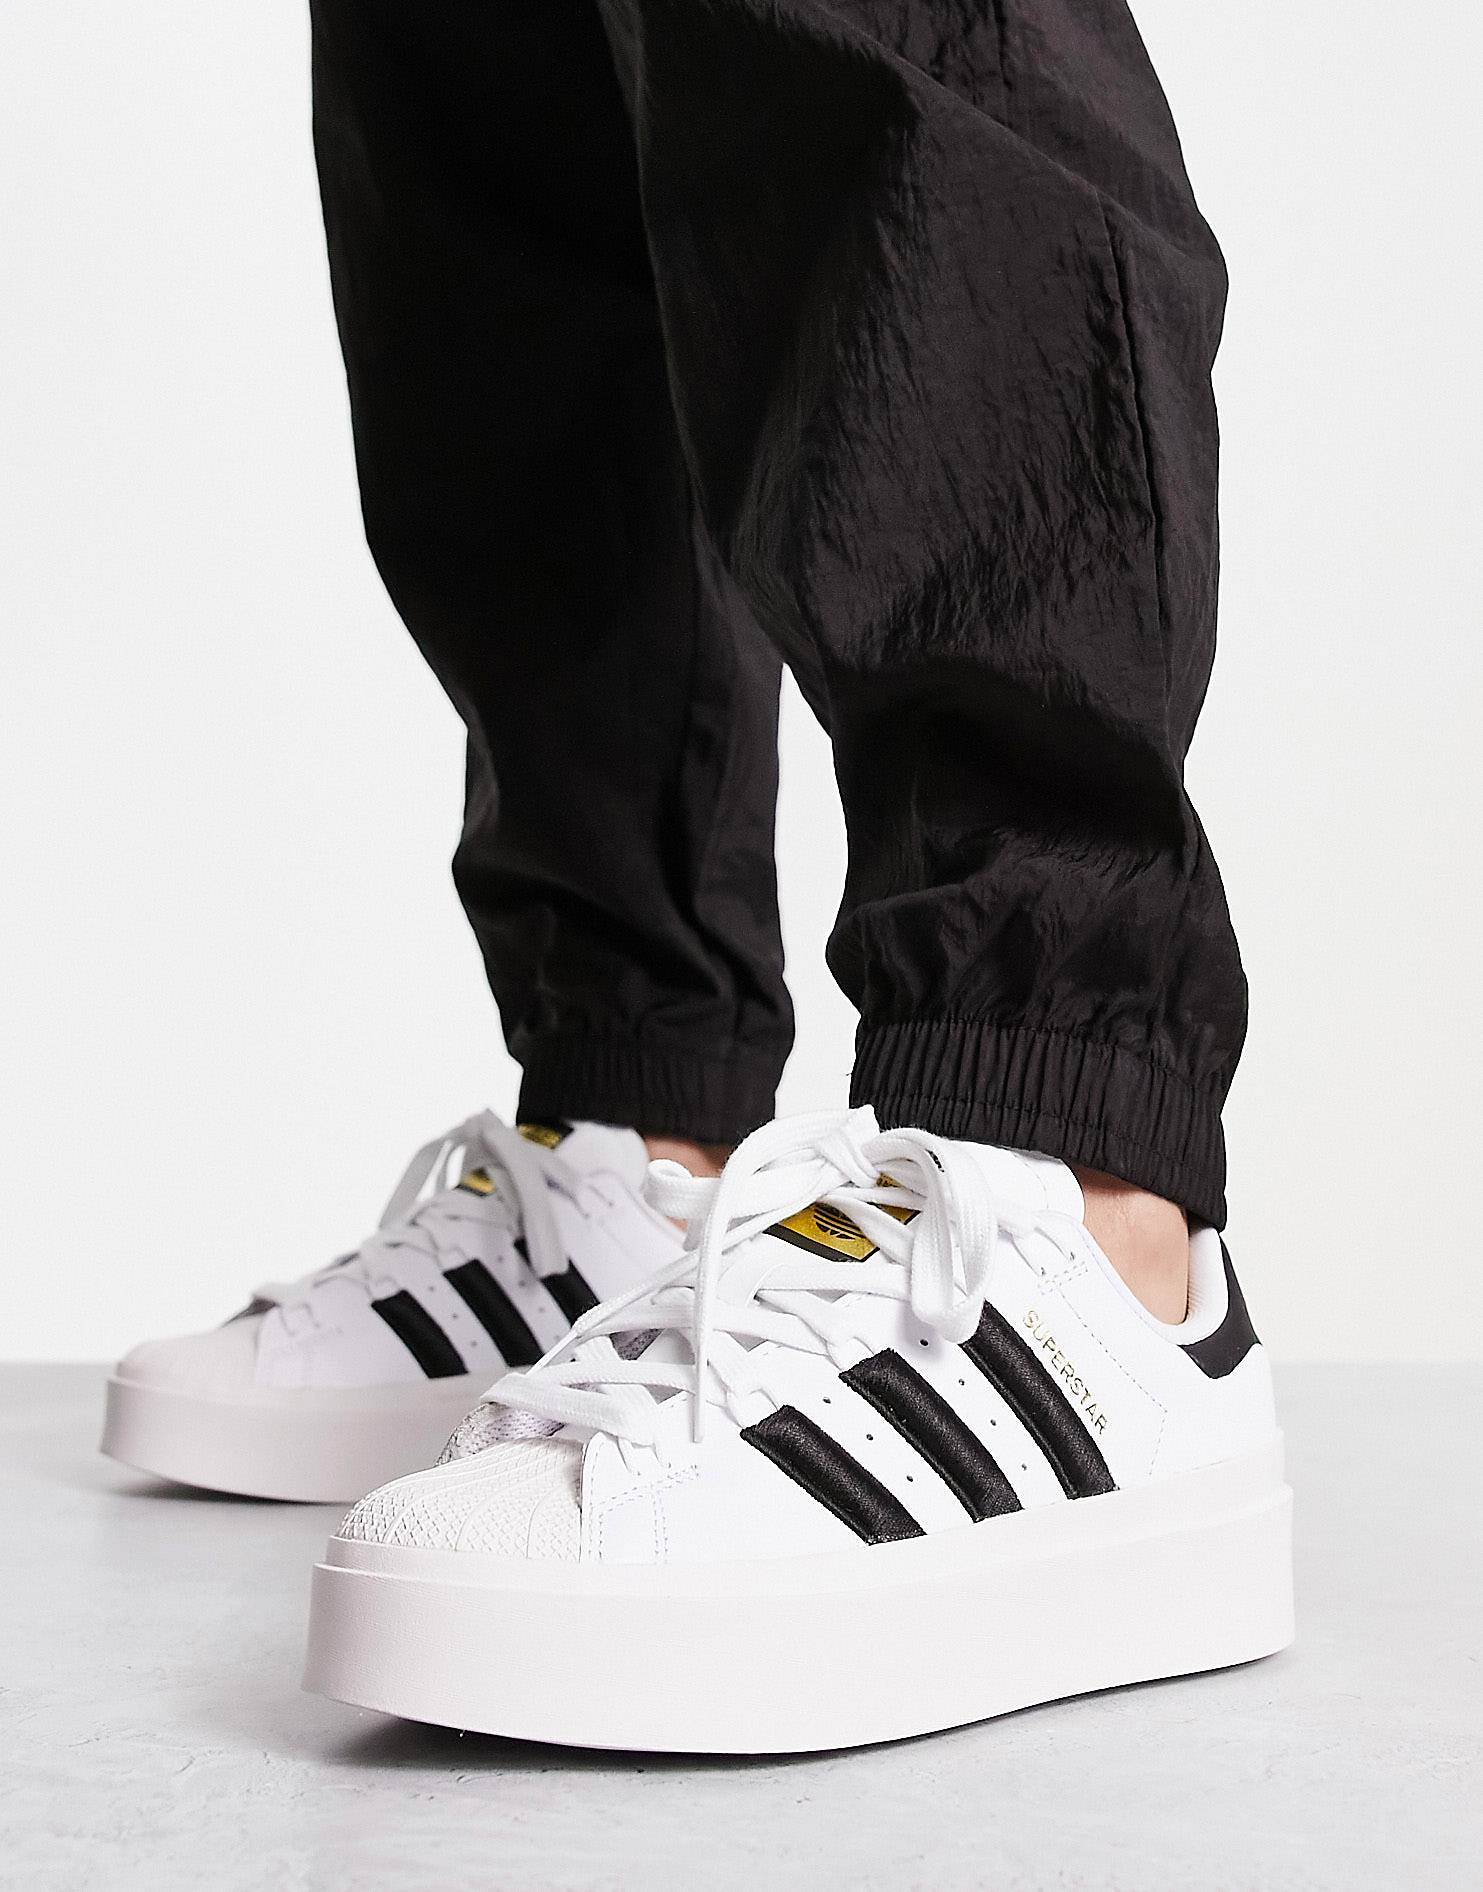 Кроссовки на платформе Adidas Originals Superstar Bonega, белый/черный